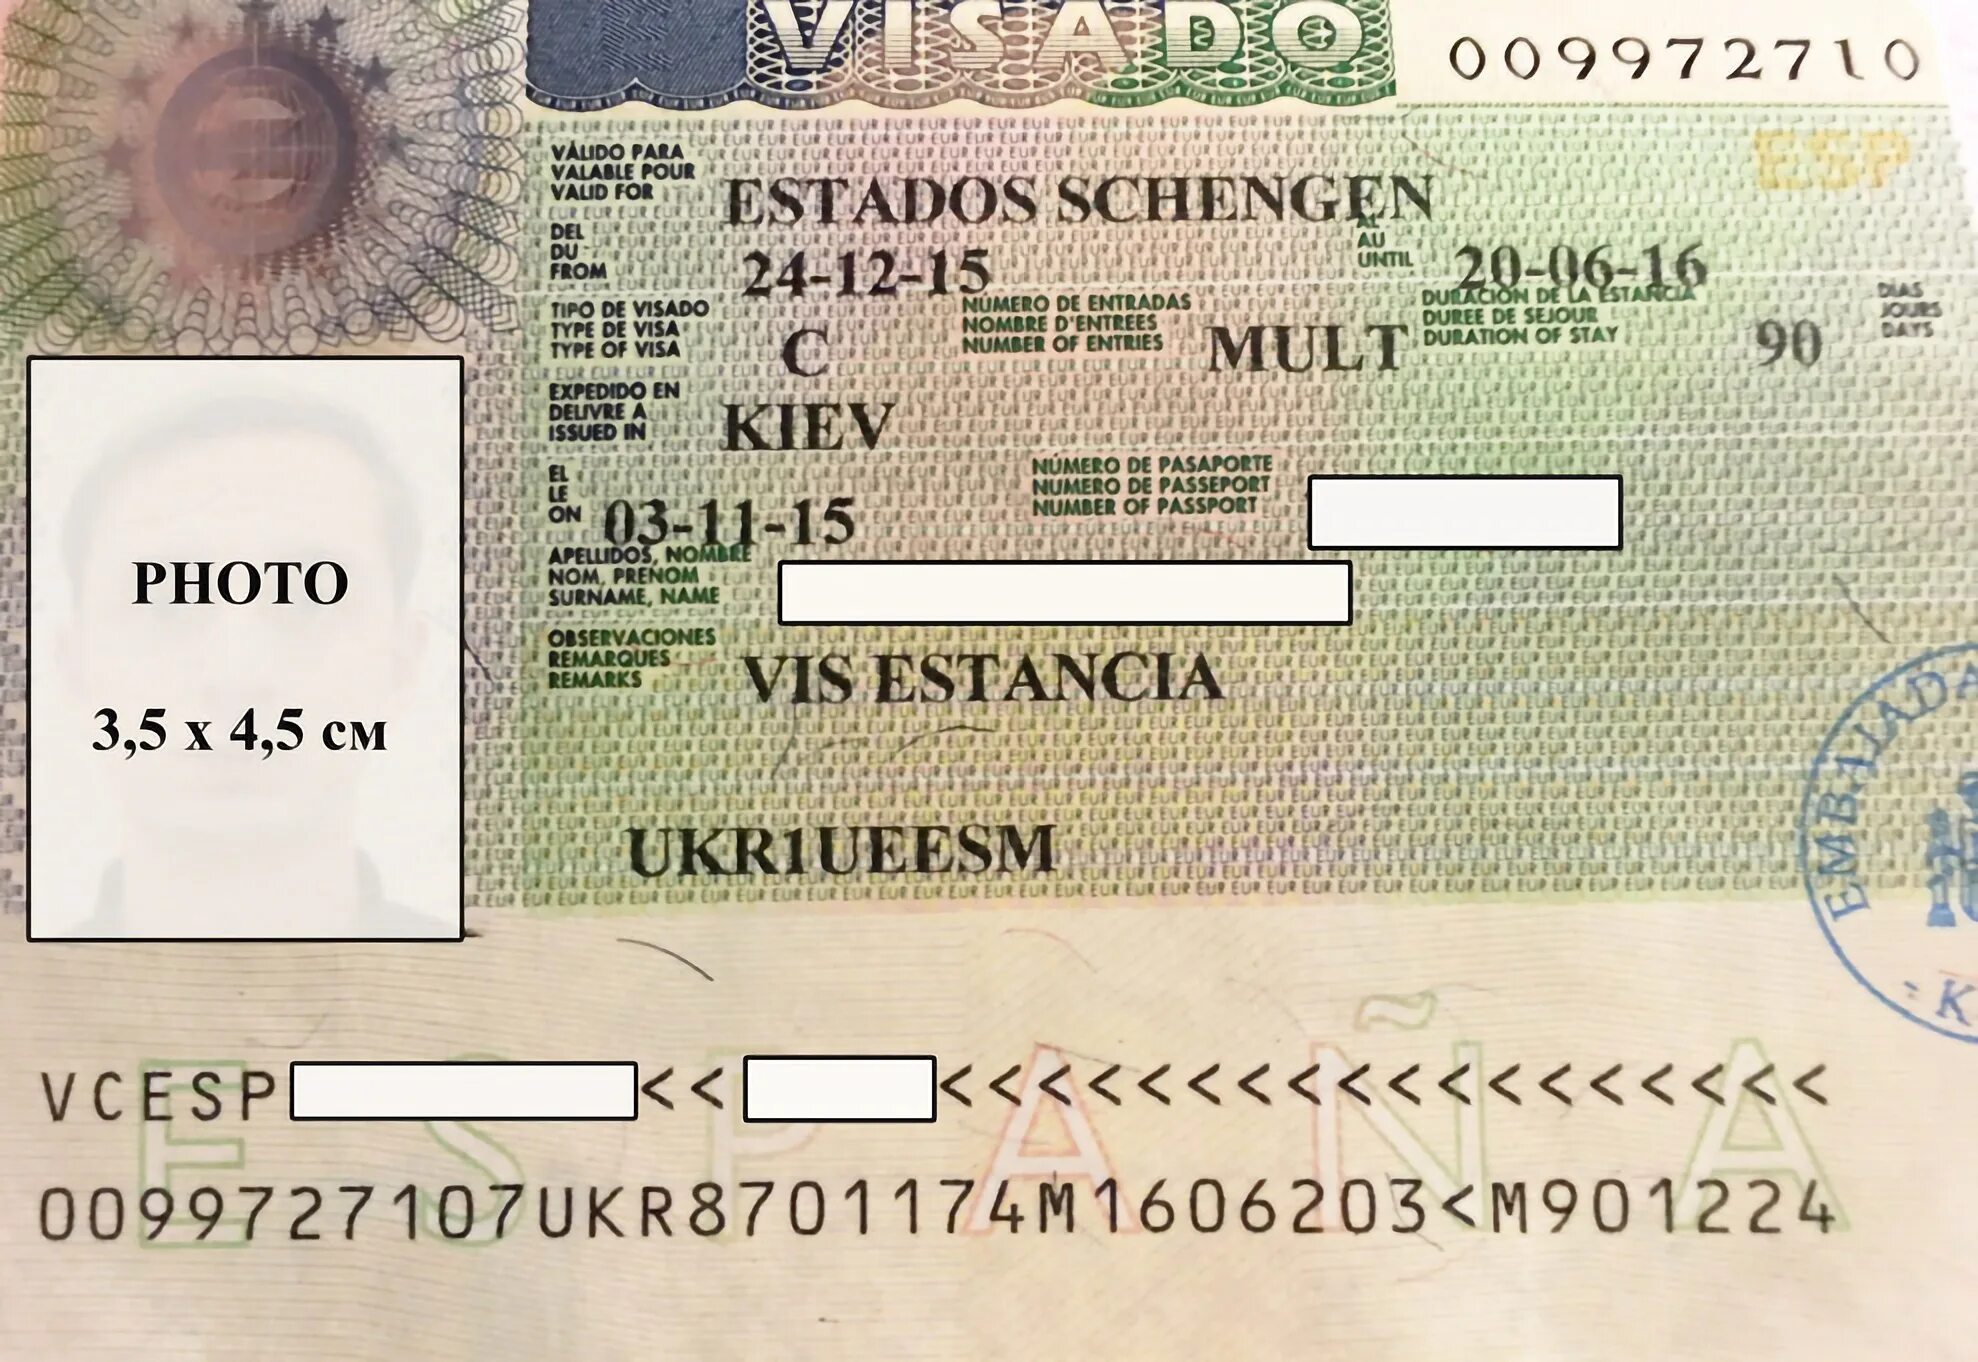 Шенген сегодня. Виза шенген в Испанию. Испанская виза шенген. Учебная виза в Германию. Шенгенская мультивиза испанская.